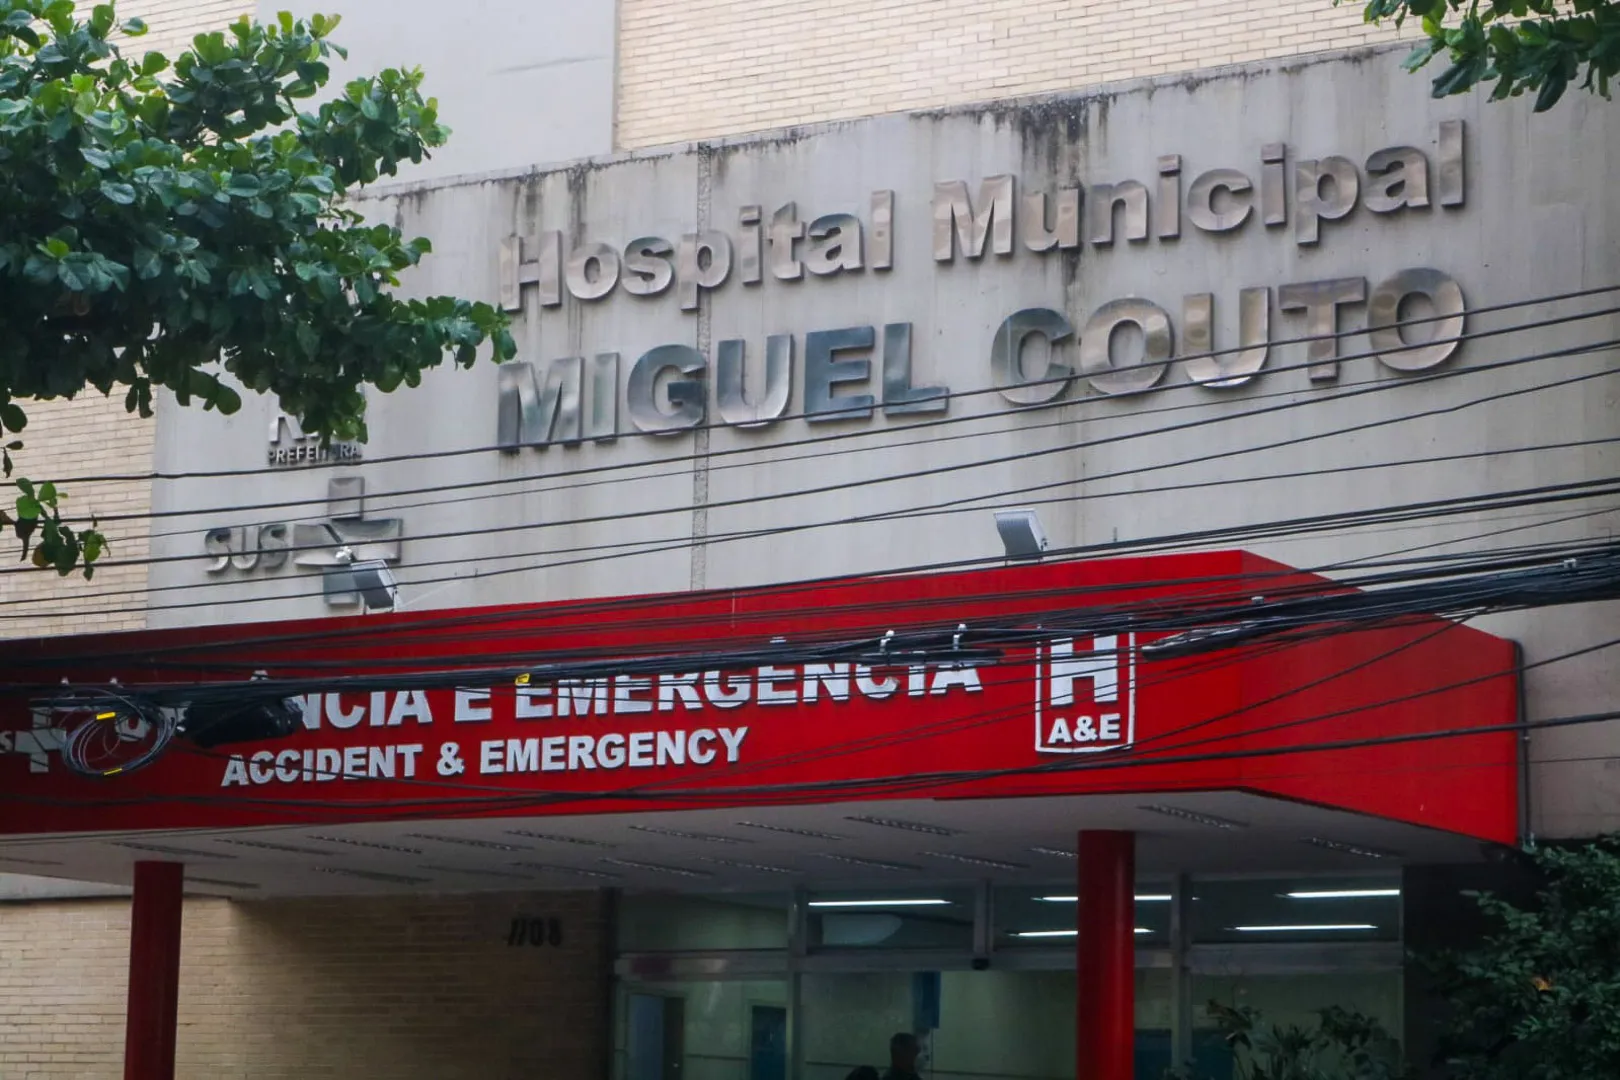 Vítima foi transferida para o Hospital Miguel Couto, onde passou por cesariana